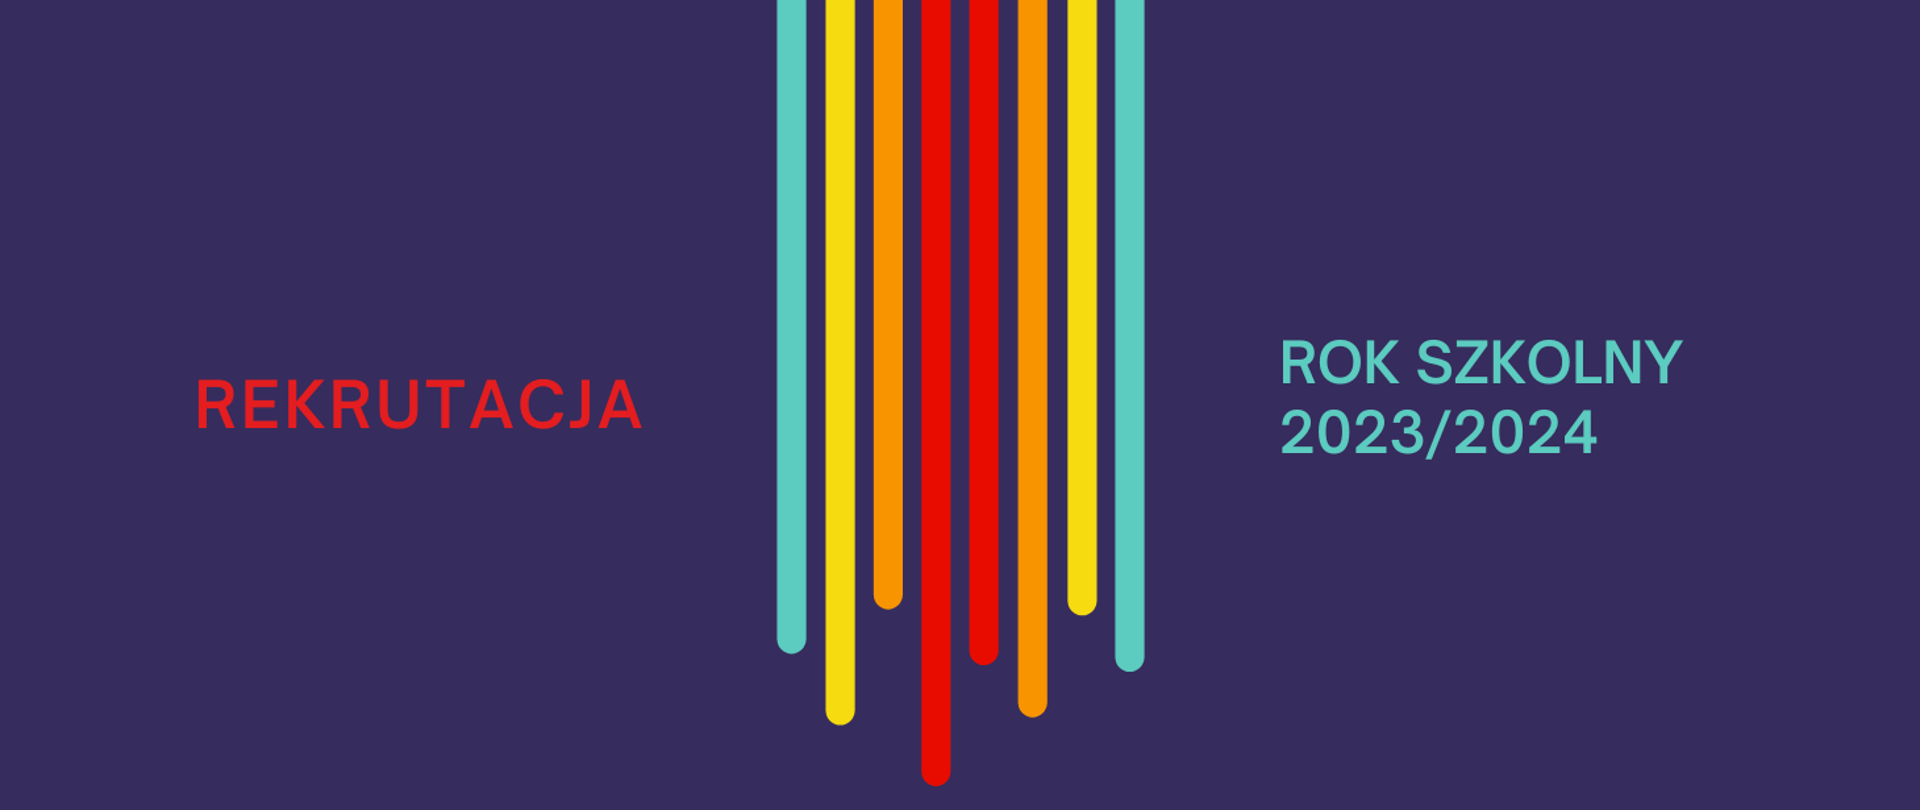 Grafika na ciemnopurpurowym tle z kolorowymi - pionowymi elementami graficznymi po środku i tekstem "Rekrutacja na rok szkolny 2023/2024"